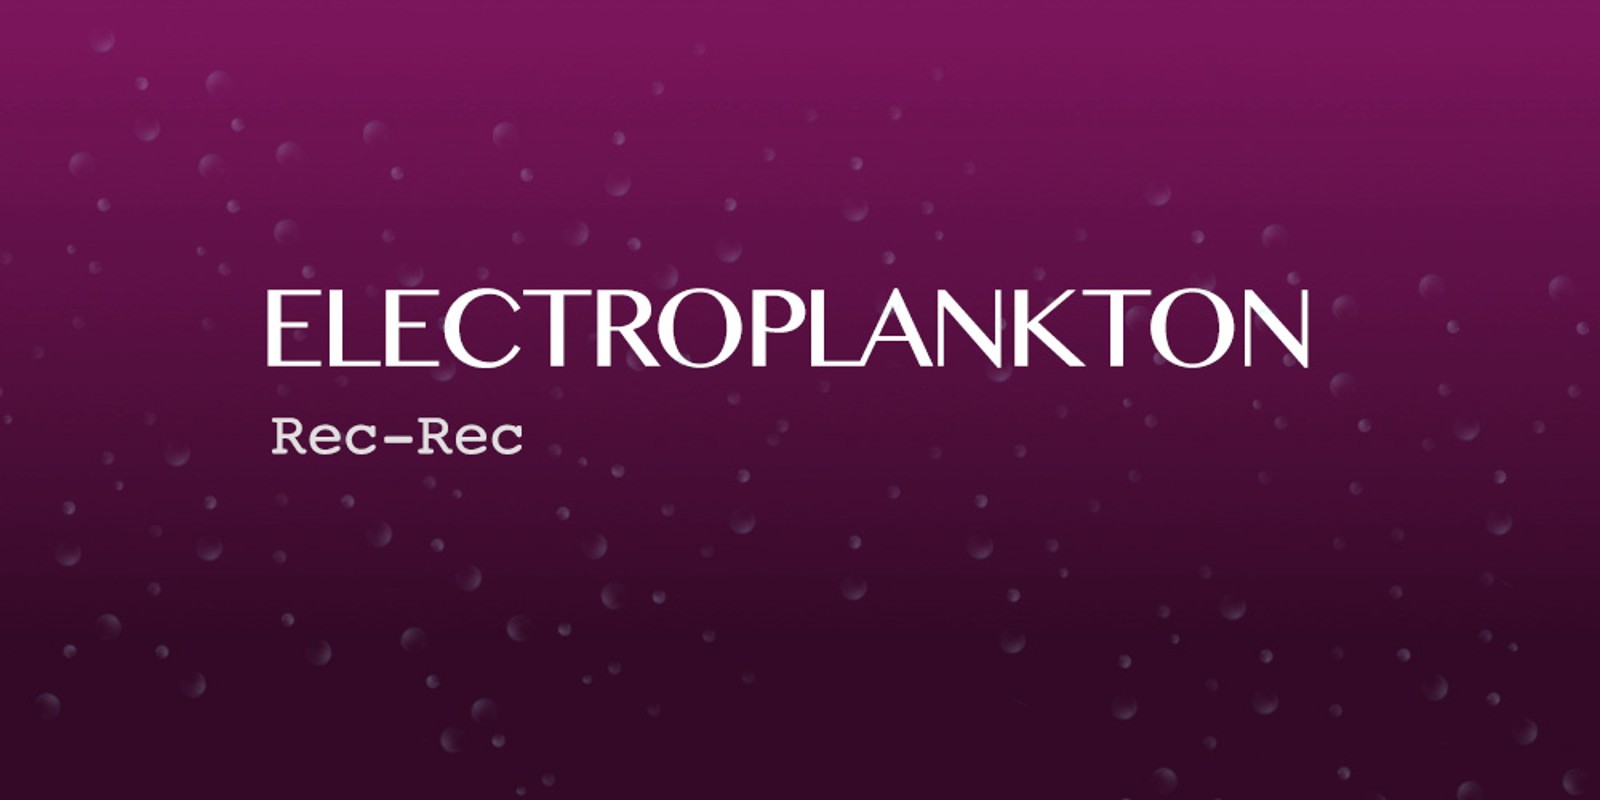 Electroplankton™ Rec-Rec